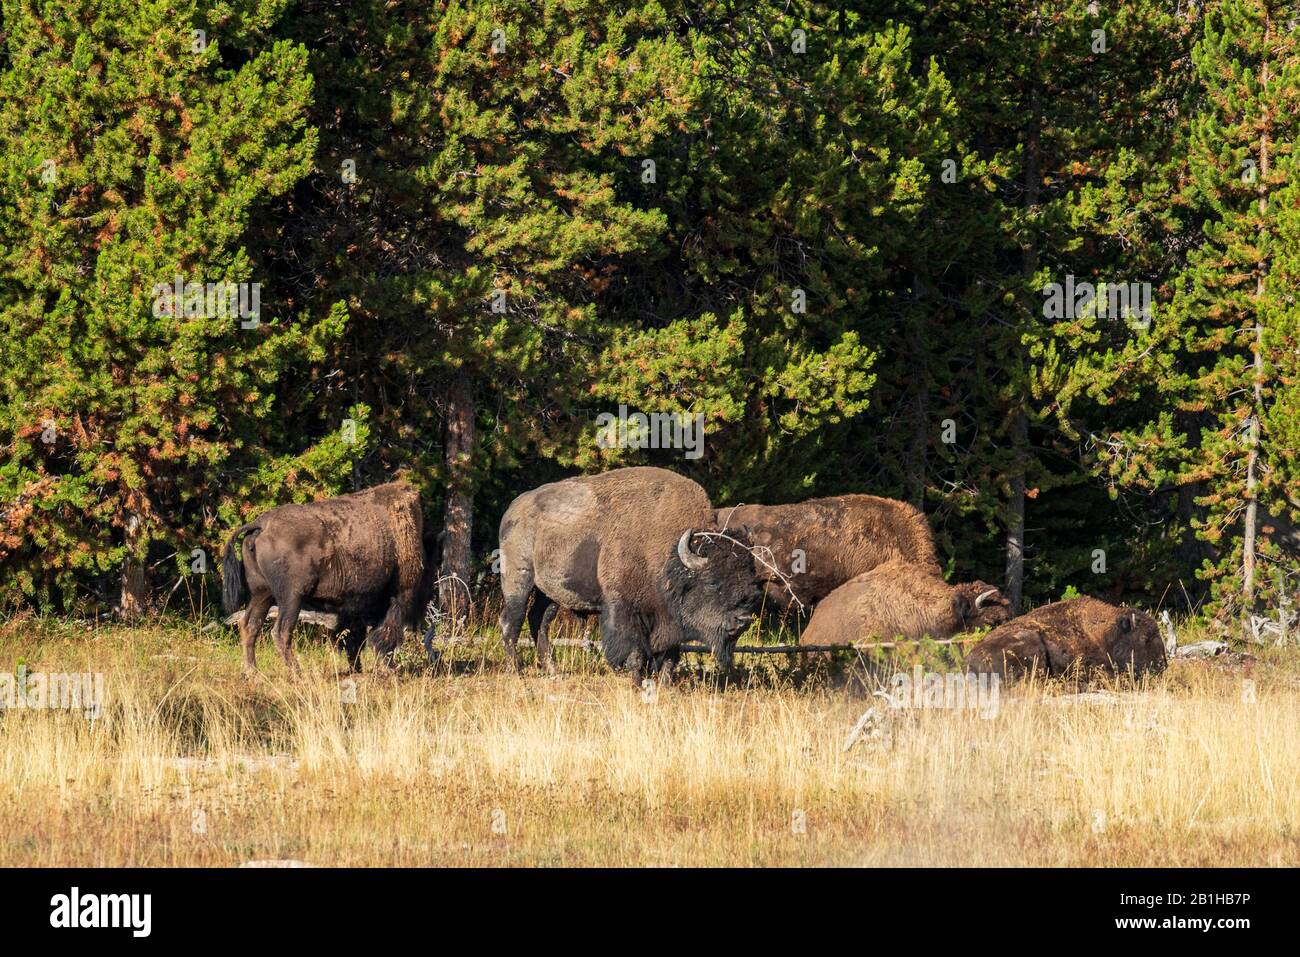 Buffalo herd near green pine trees in golden grassy field. Stock Photo